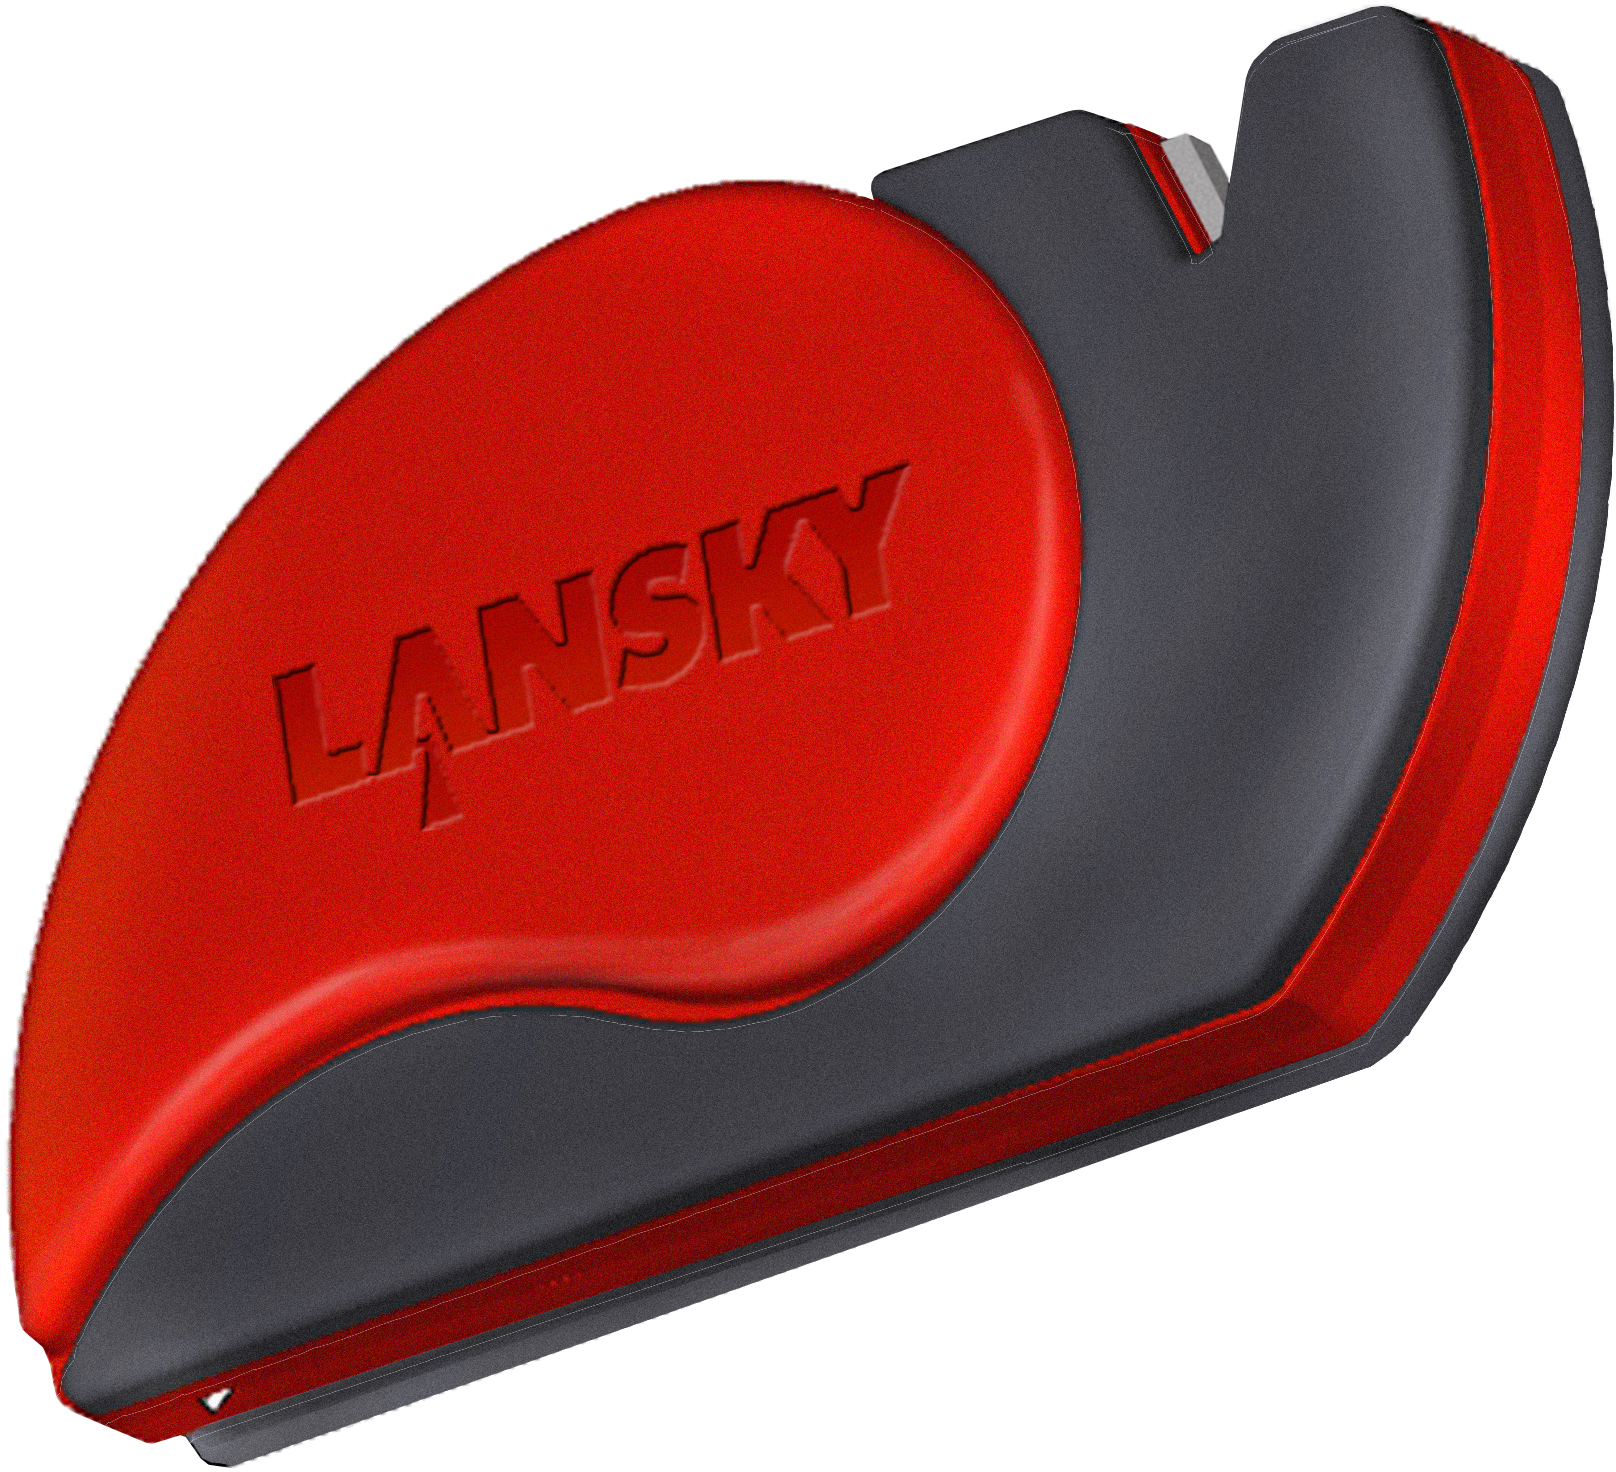 Lansky Tri-Stone BenchStone